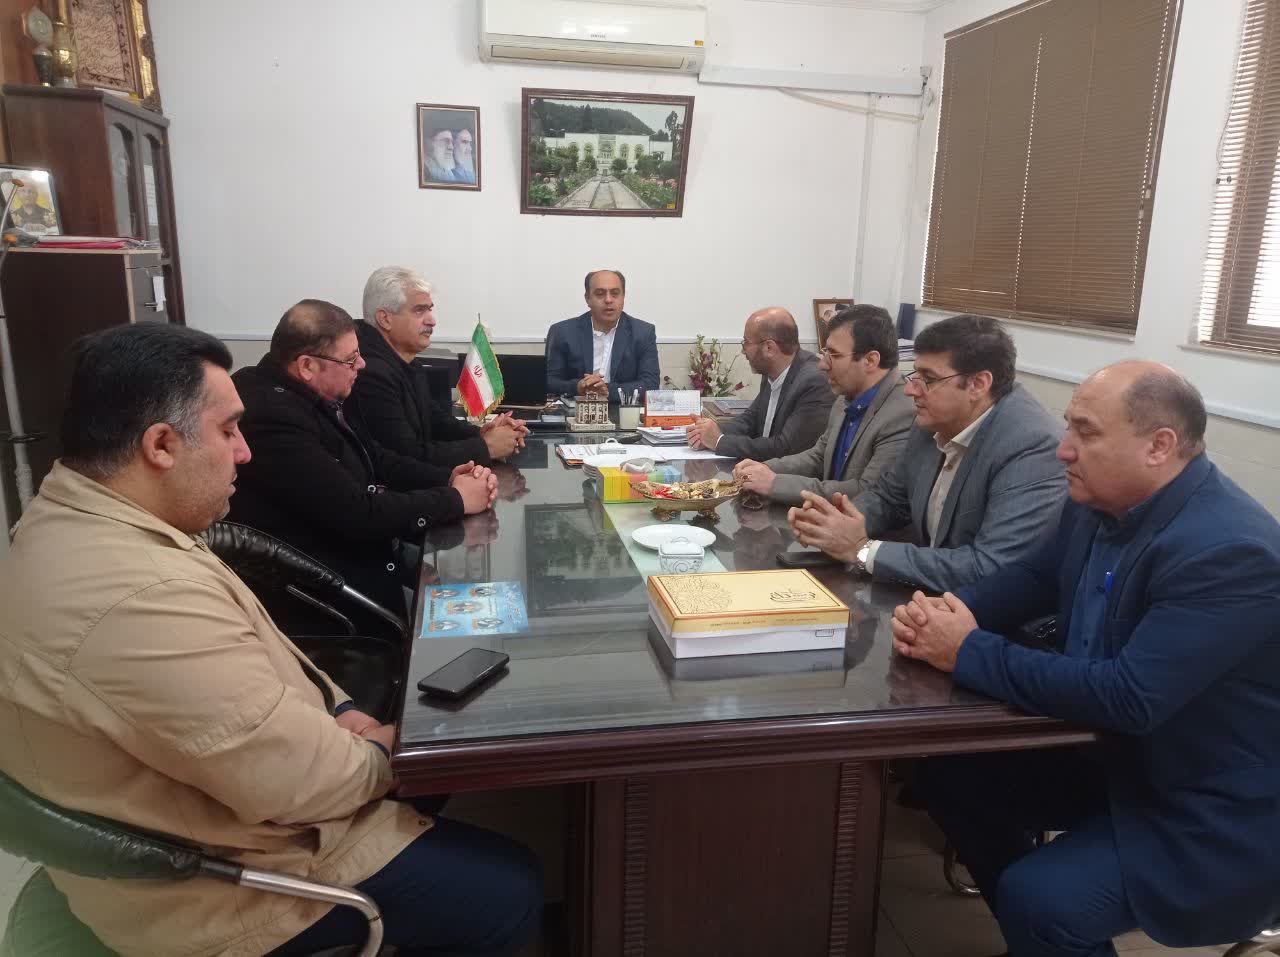 دیدار رئیس آموزش و پروش شهرستان بهشهر با رئیس اتاق اصناف شهرستان بهشهر